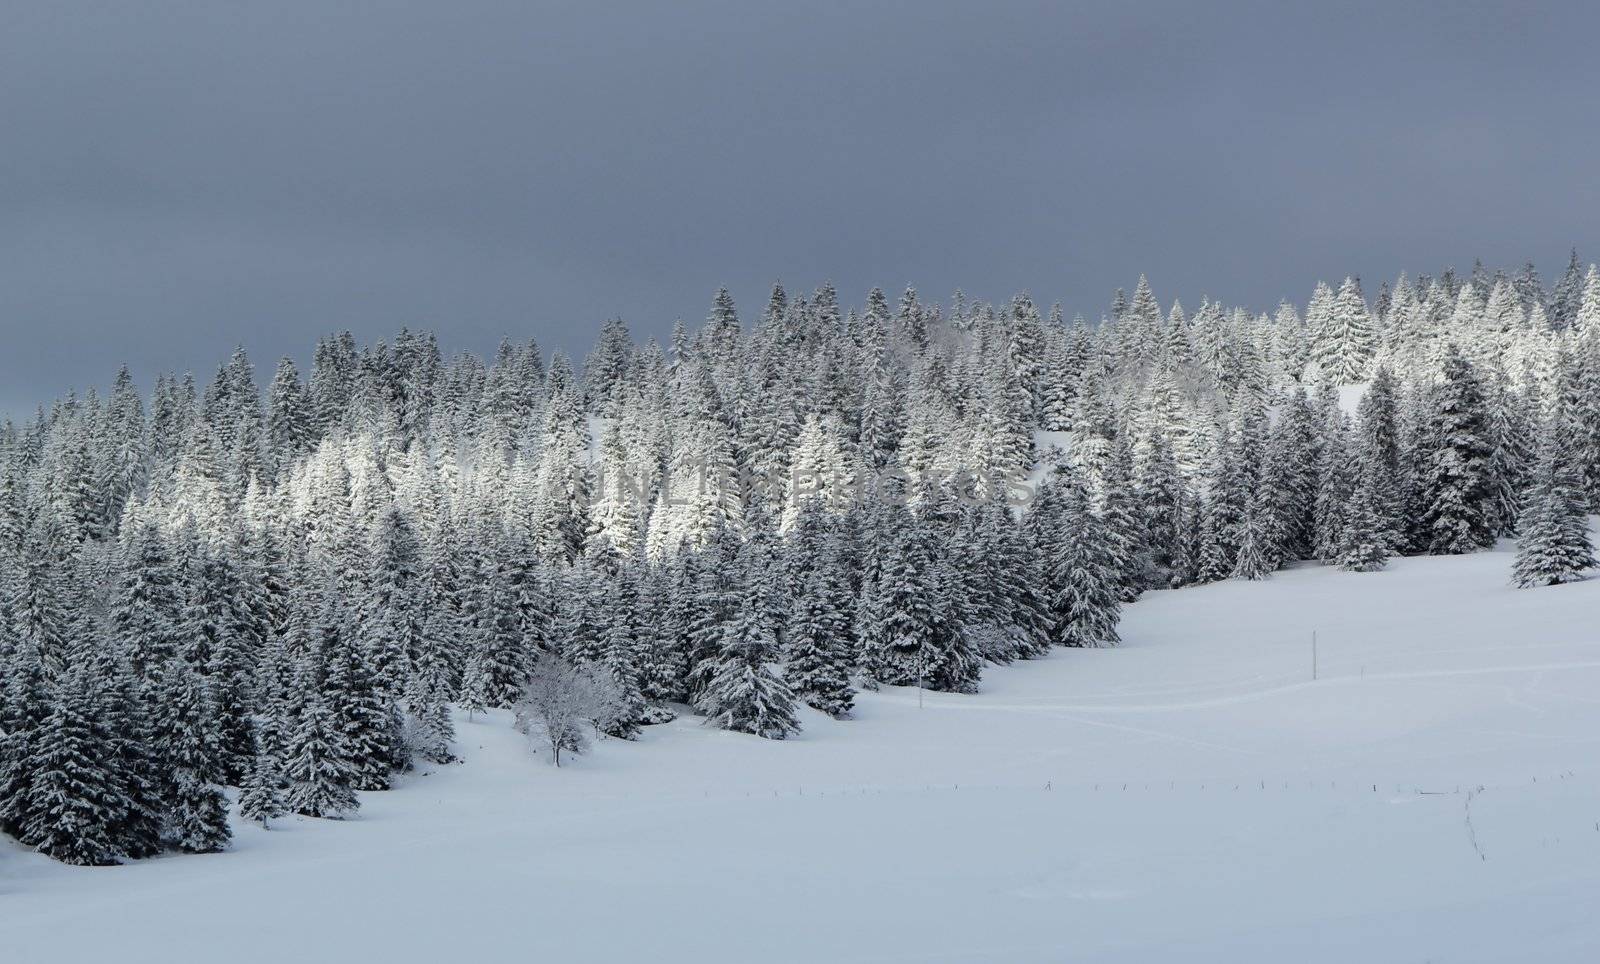 Fir tree in winter, Jura mountain, Switzerland by Elenaphotos21